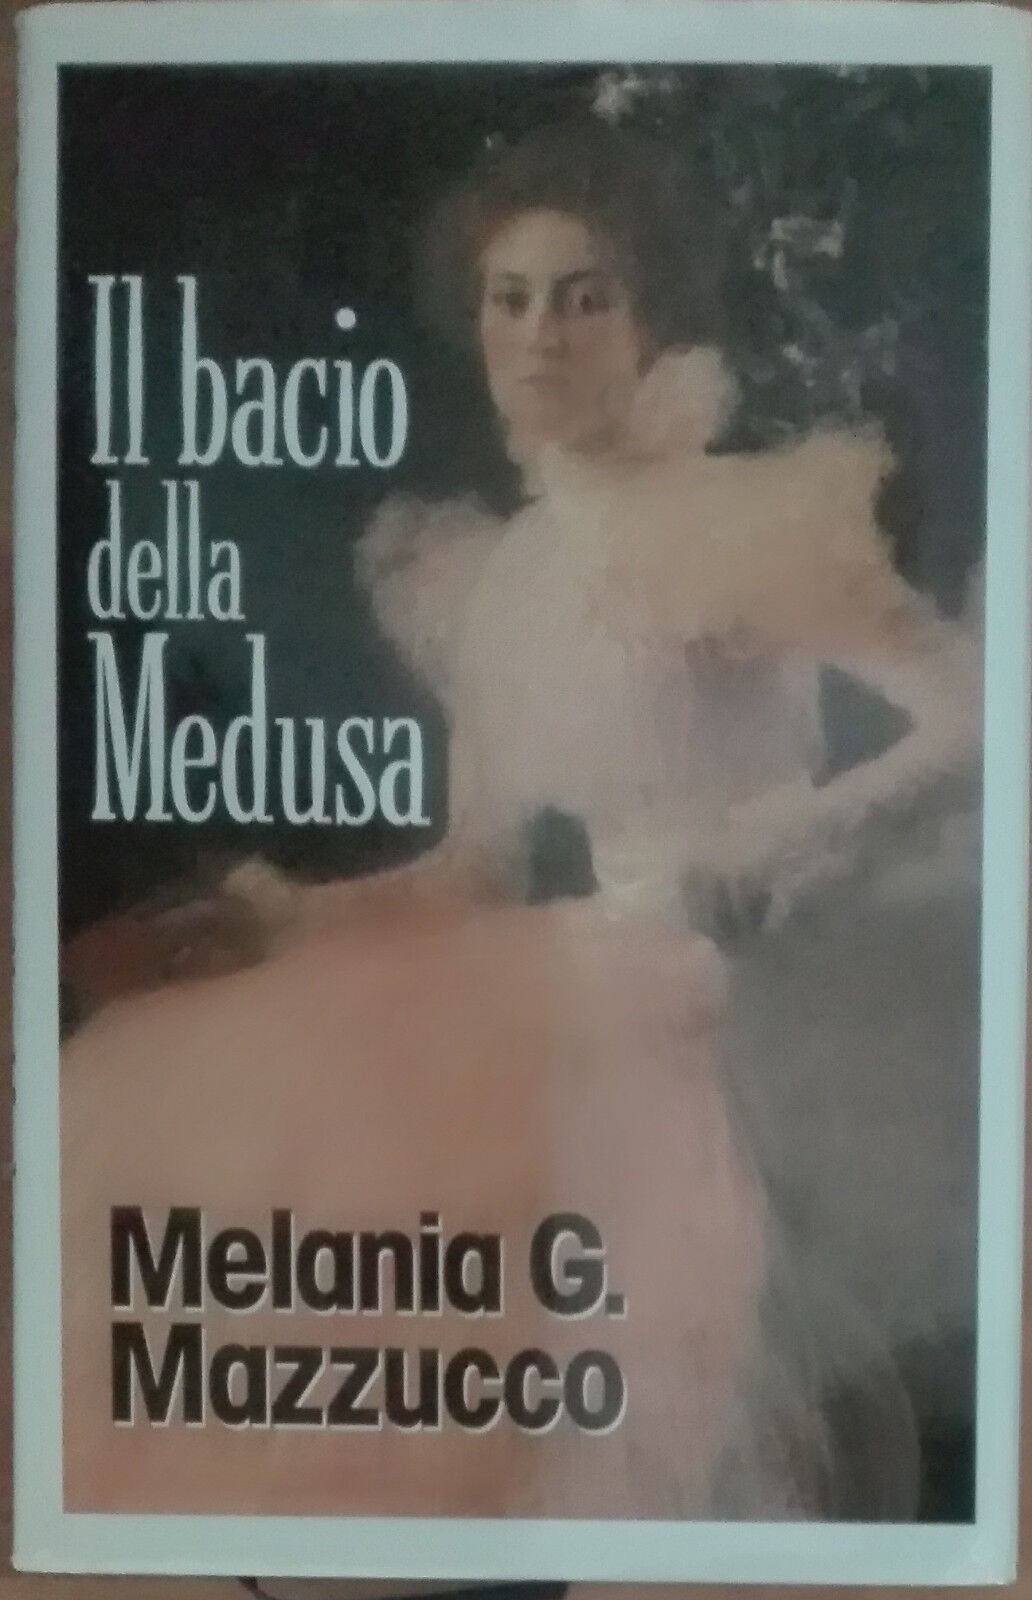 Il bacio della Medusa - Melania G. Mazzucco - Euroclub,1996 - A